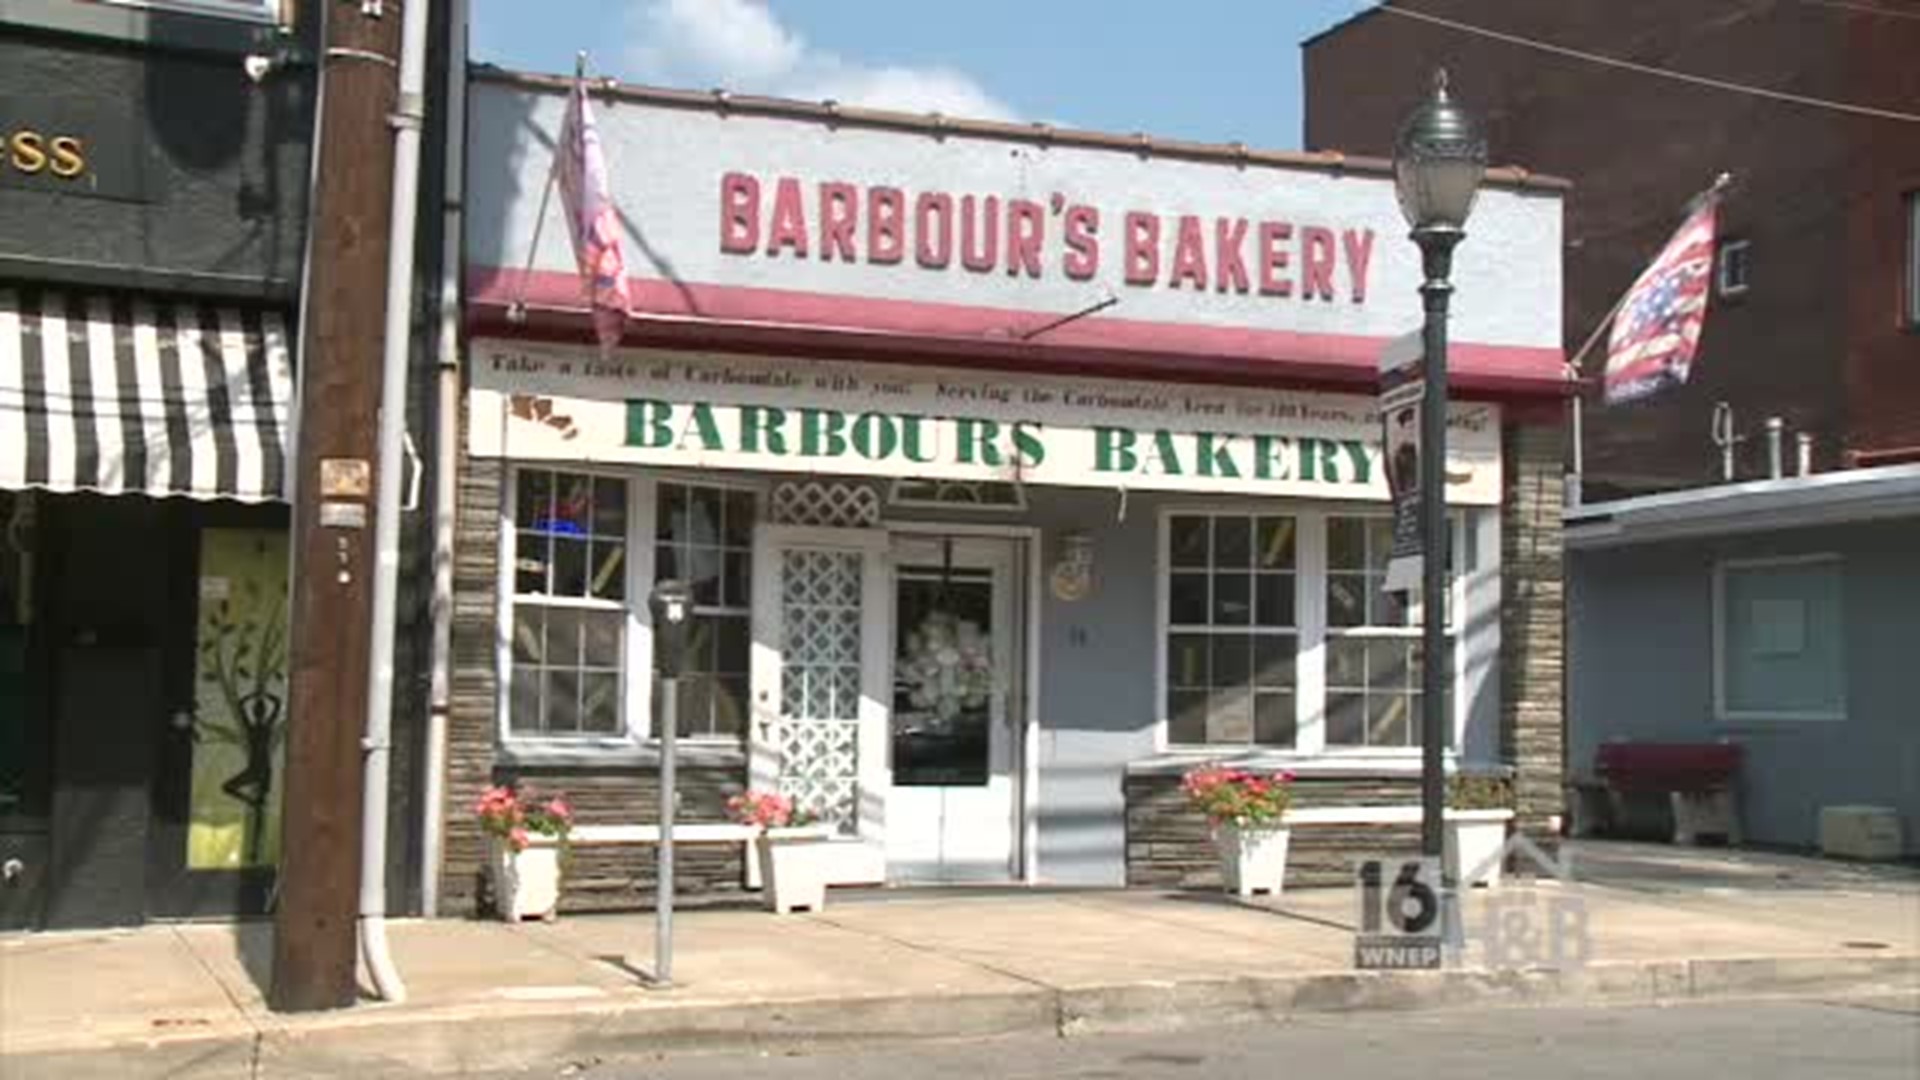 Barbour's Bakey Shop in Scranton